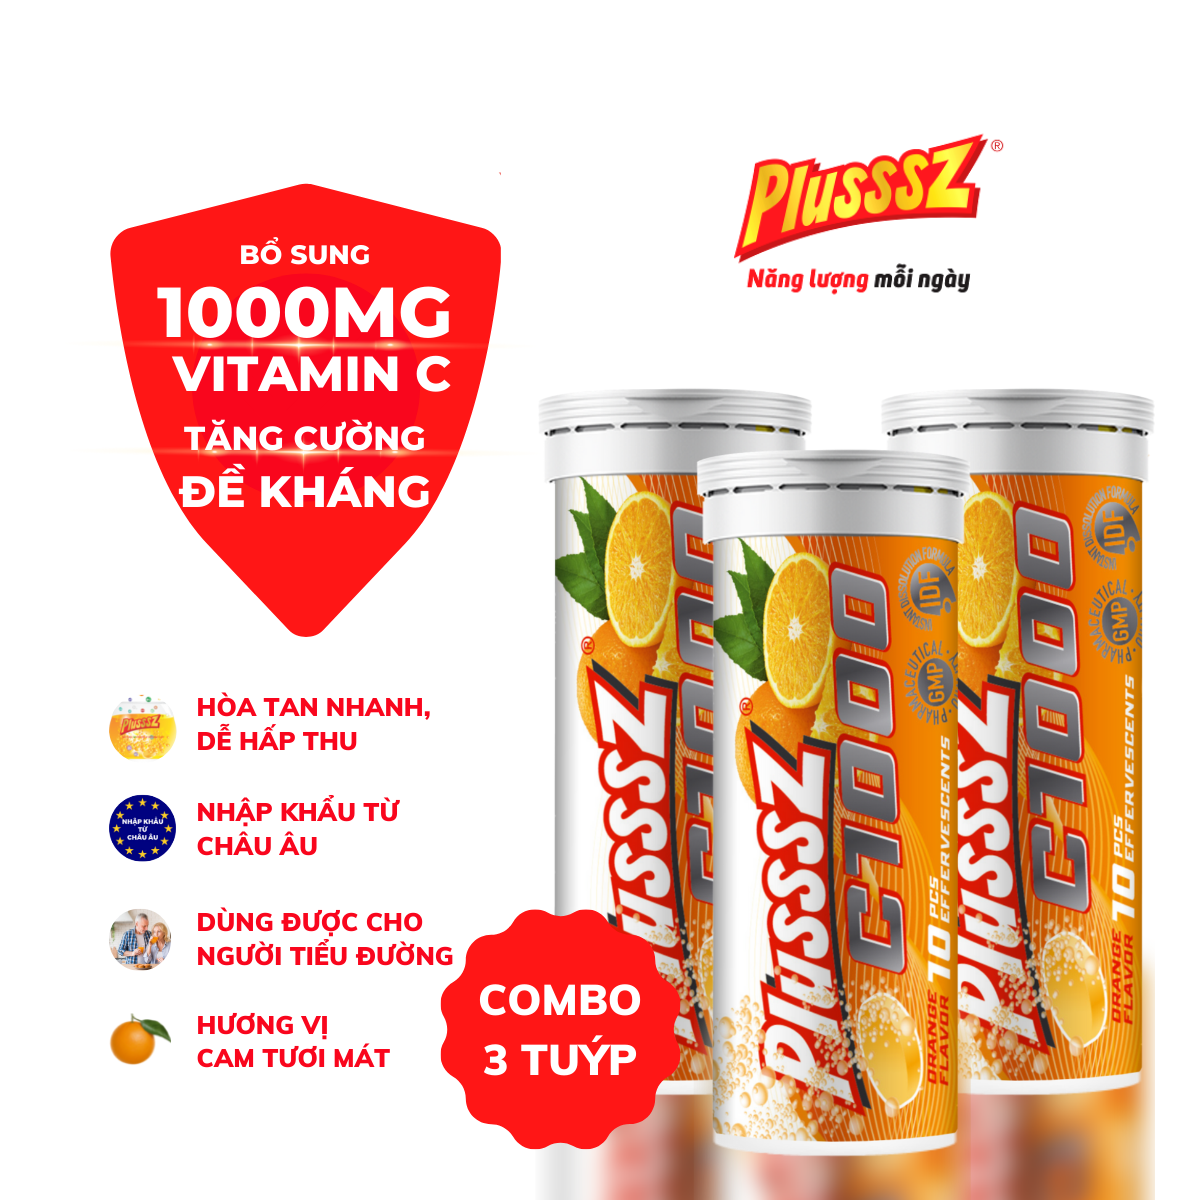 COMBO3TUYP Viên sủi Plusssz C1000 bổ sung 1000mg vitamin c hỗ trợ tăng